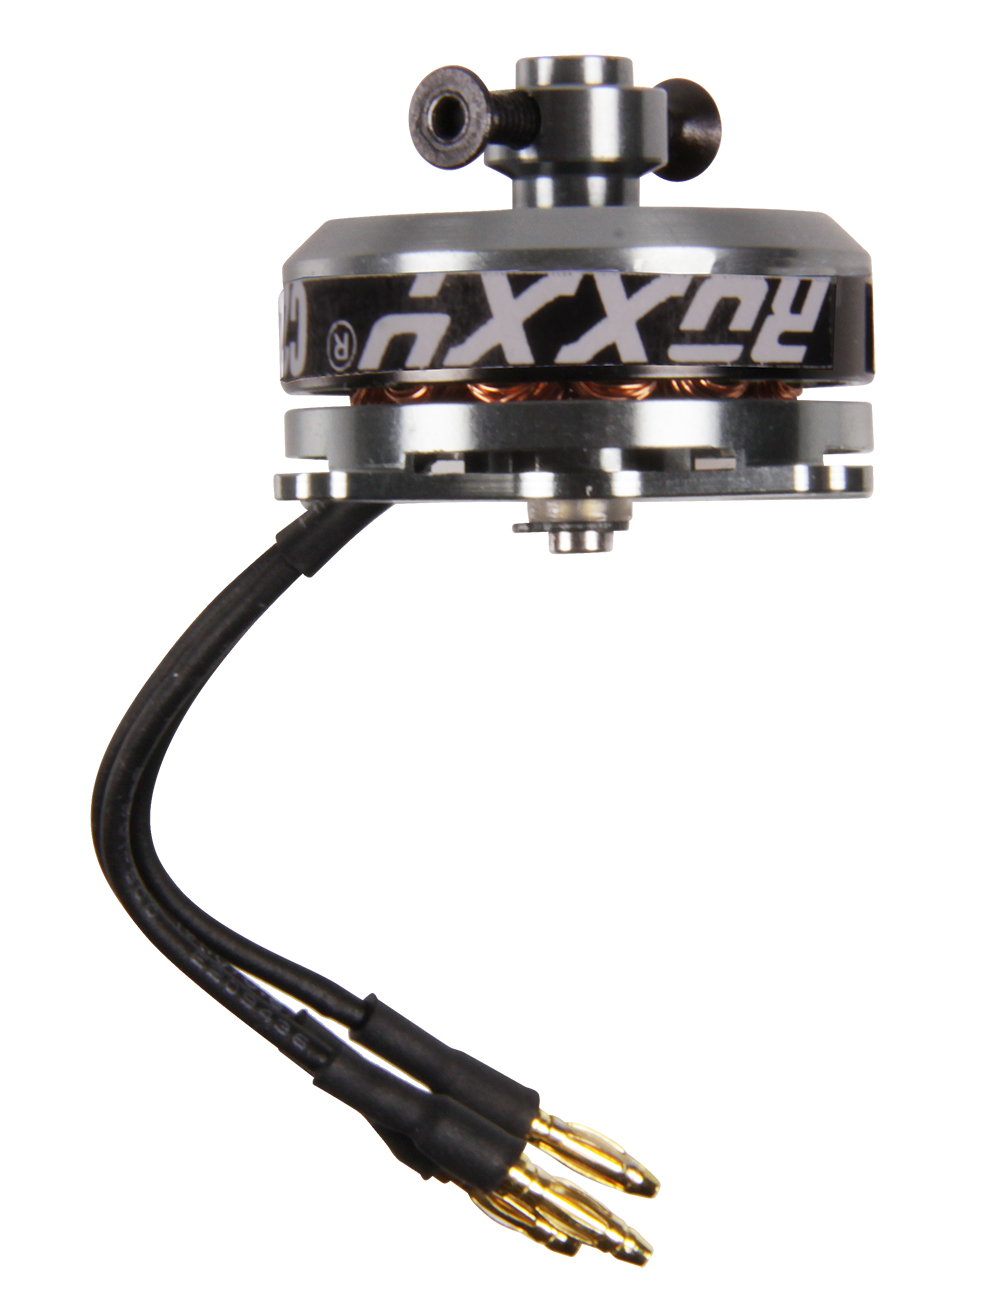 Multiplex ROXXY BL Outrunner C27-13-1800kV